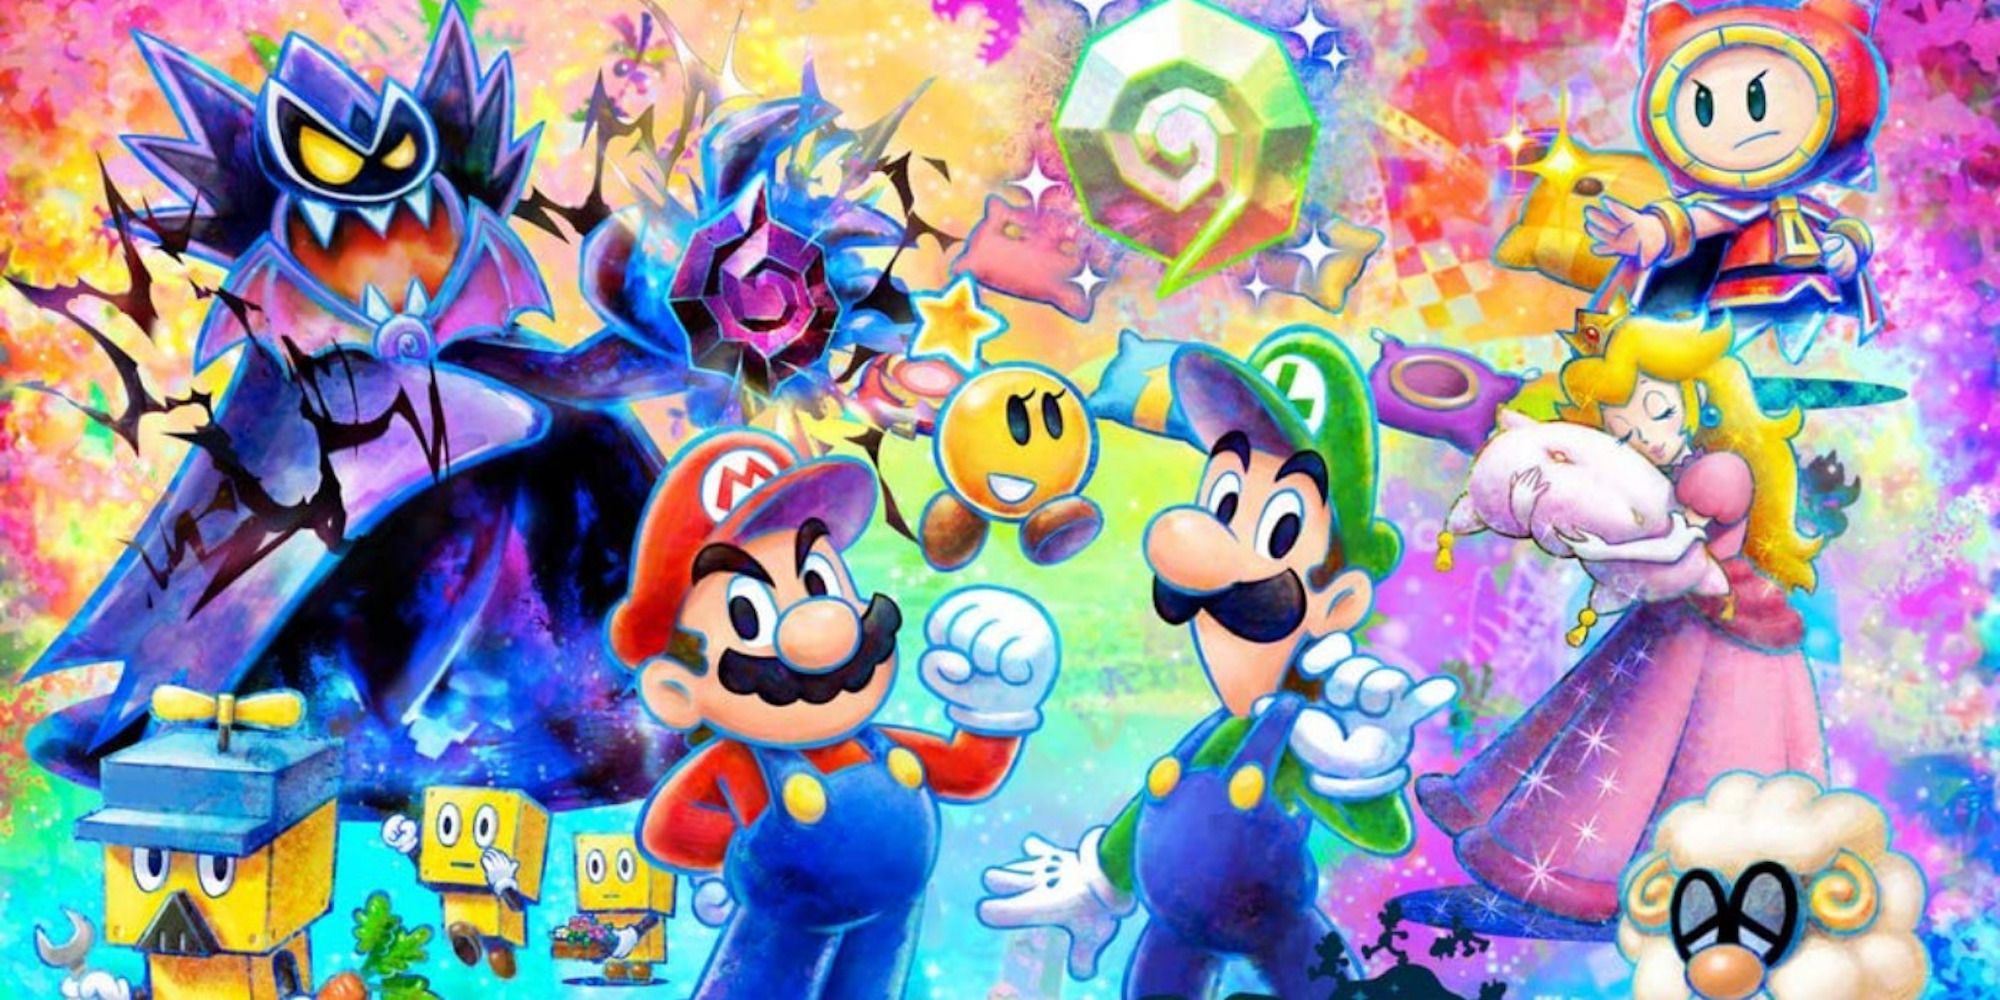 Arte promocional con personajes de Mario & Luigi Dream Team